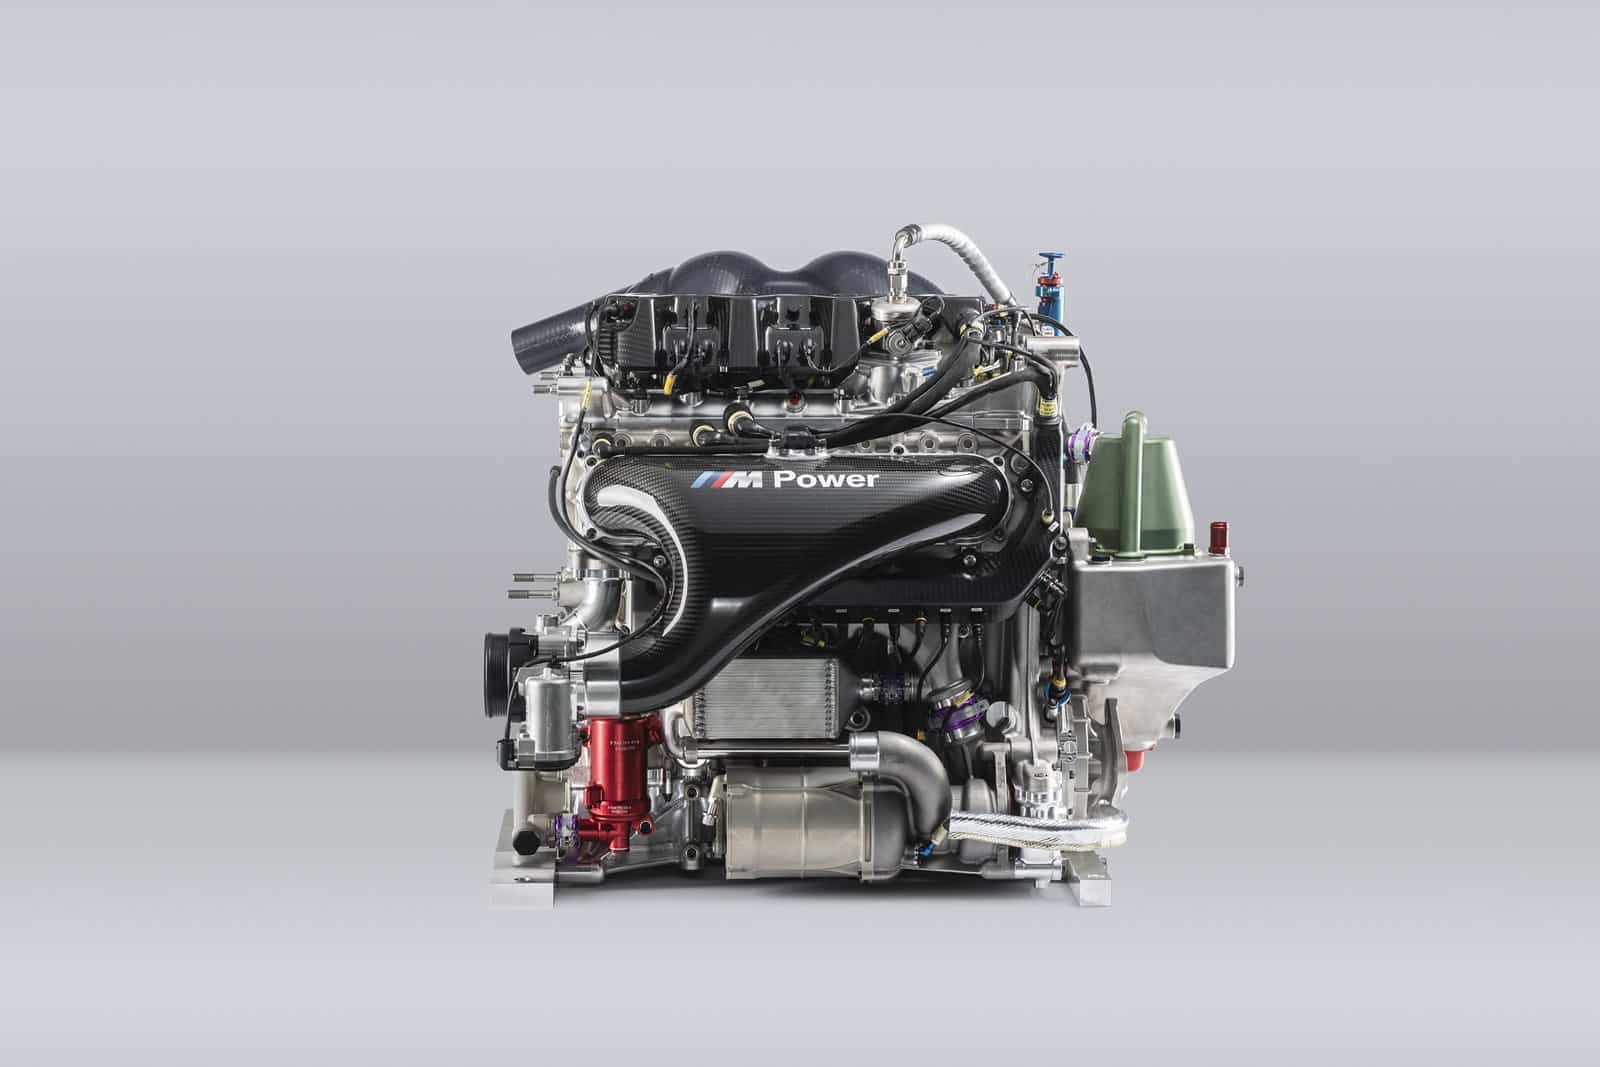 Lo último de BMW es un motor turbo de cuatro cilindros y 2.0 litros con 600 CV de potencia